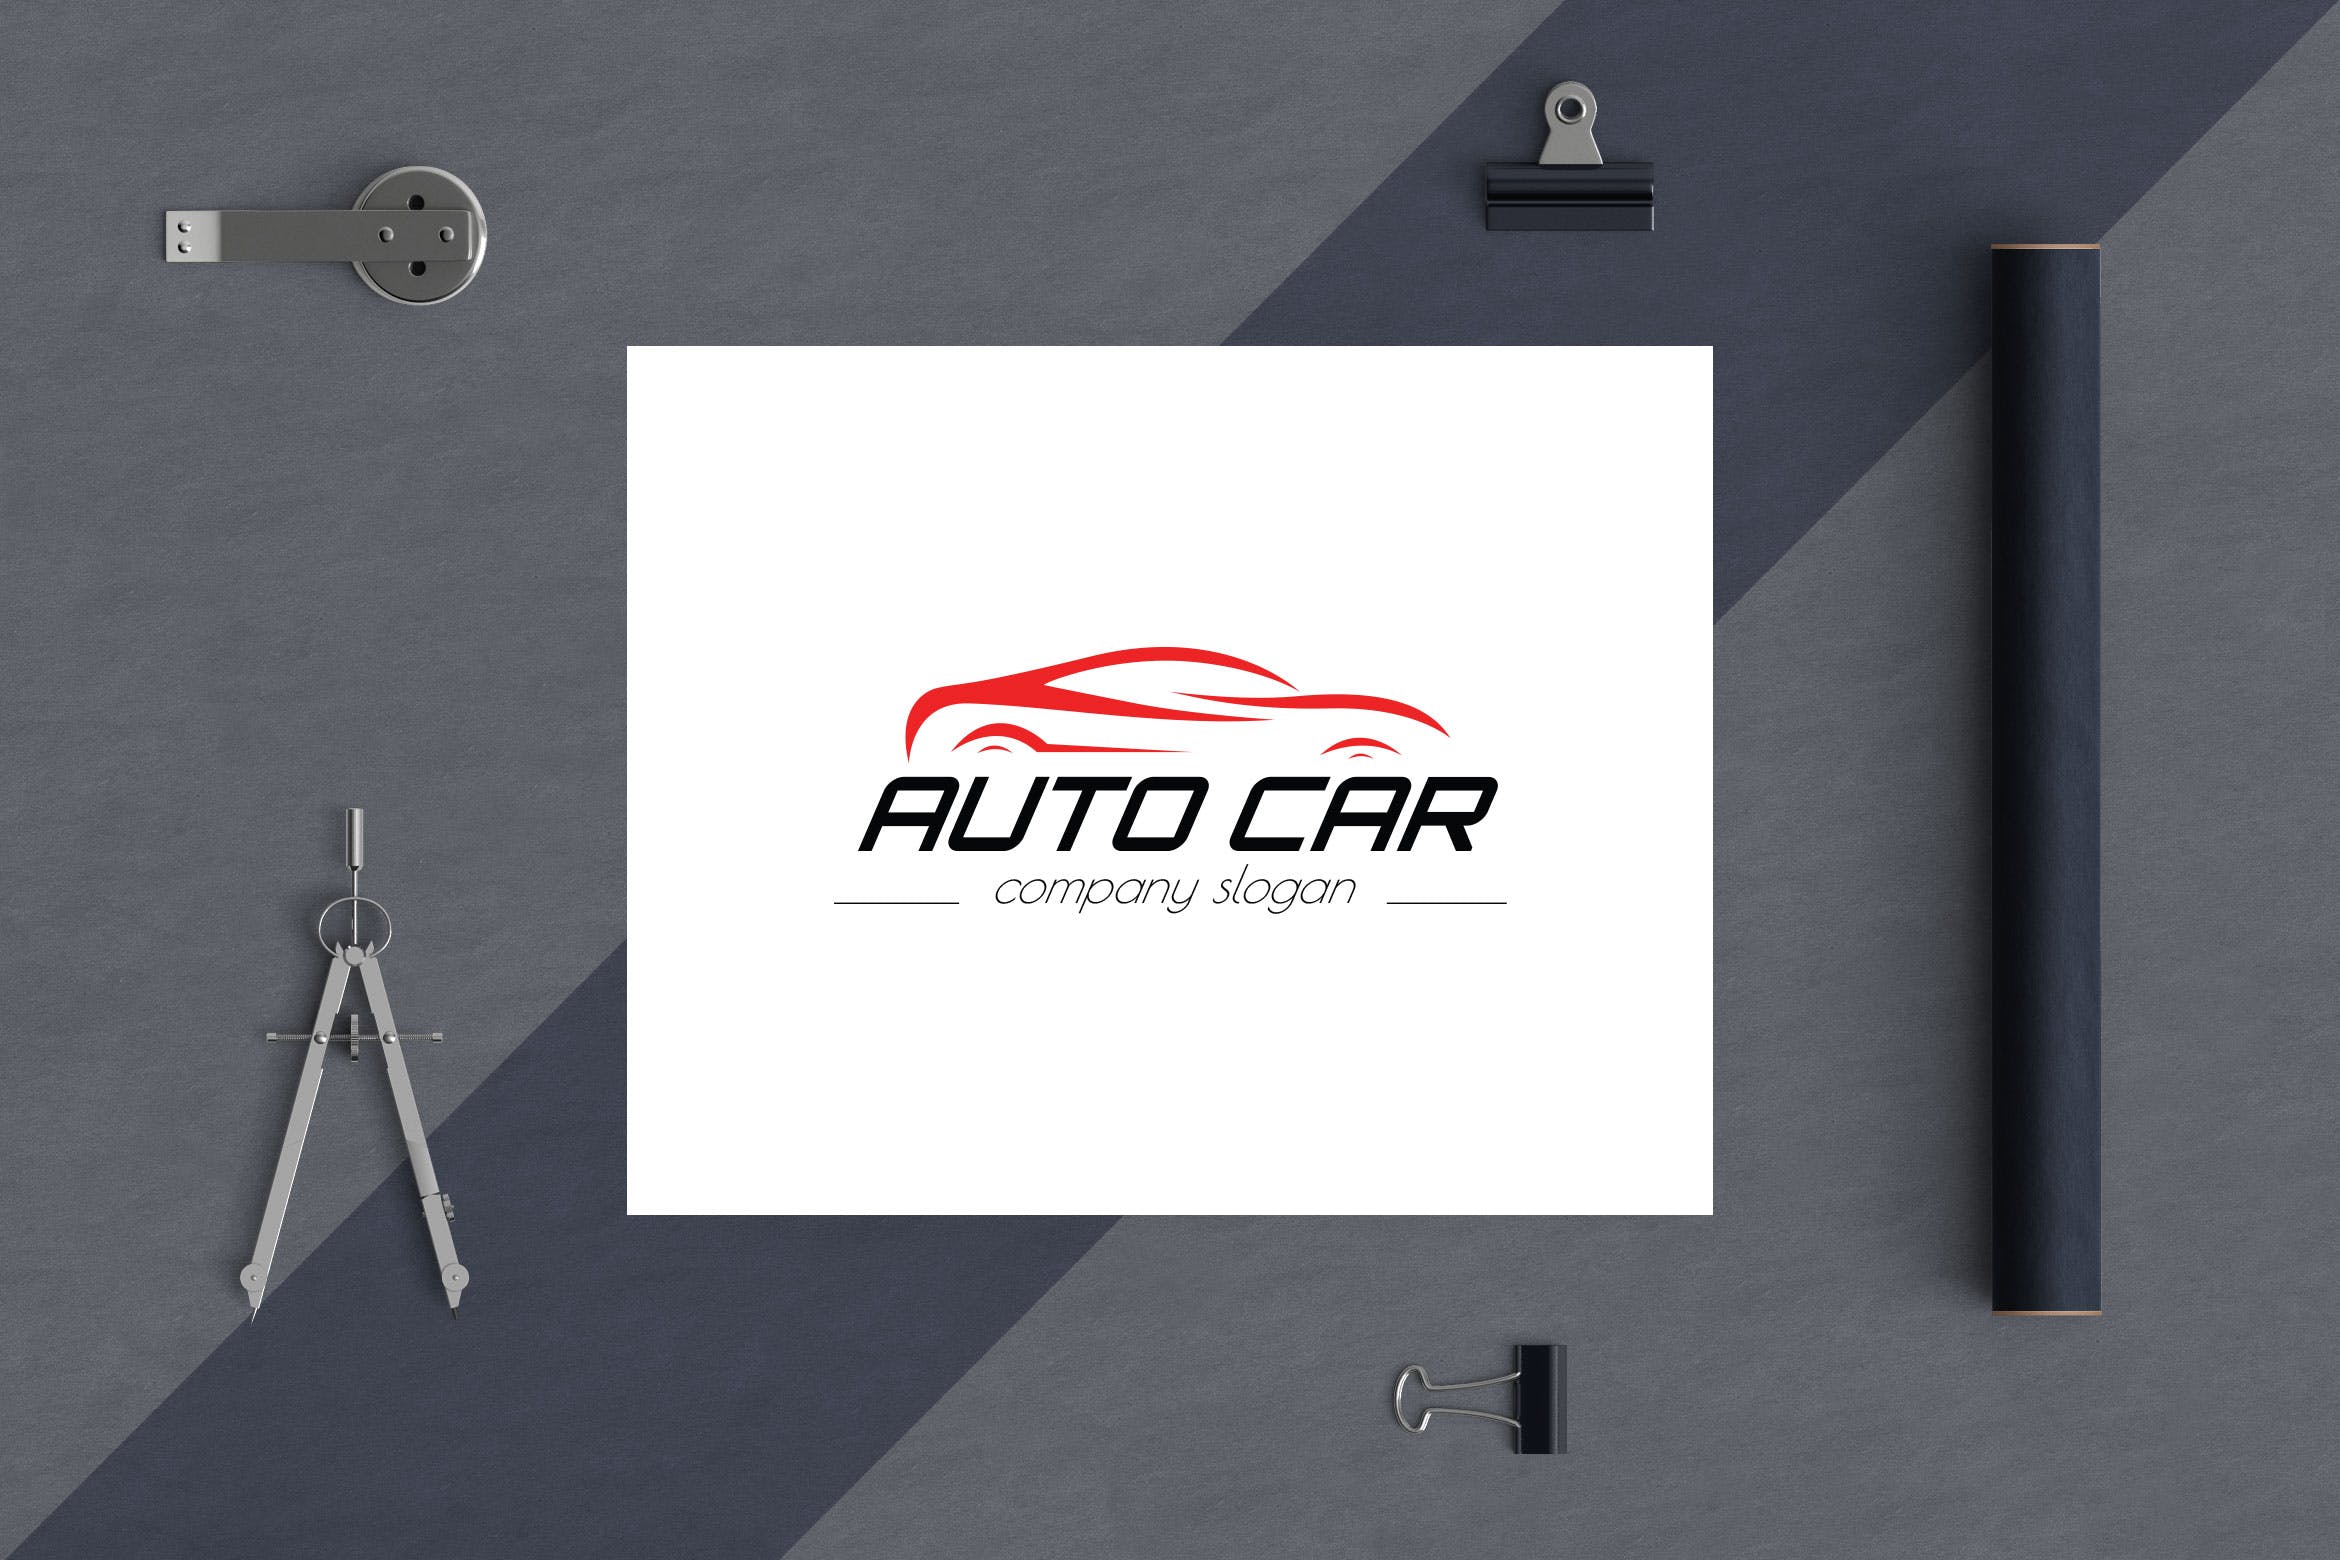 汽车相关企业品牌Logo设计非凡图库精选模板 Auto Car Business Logo Template插图